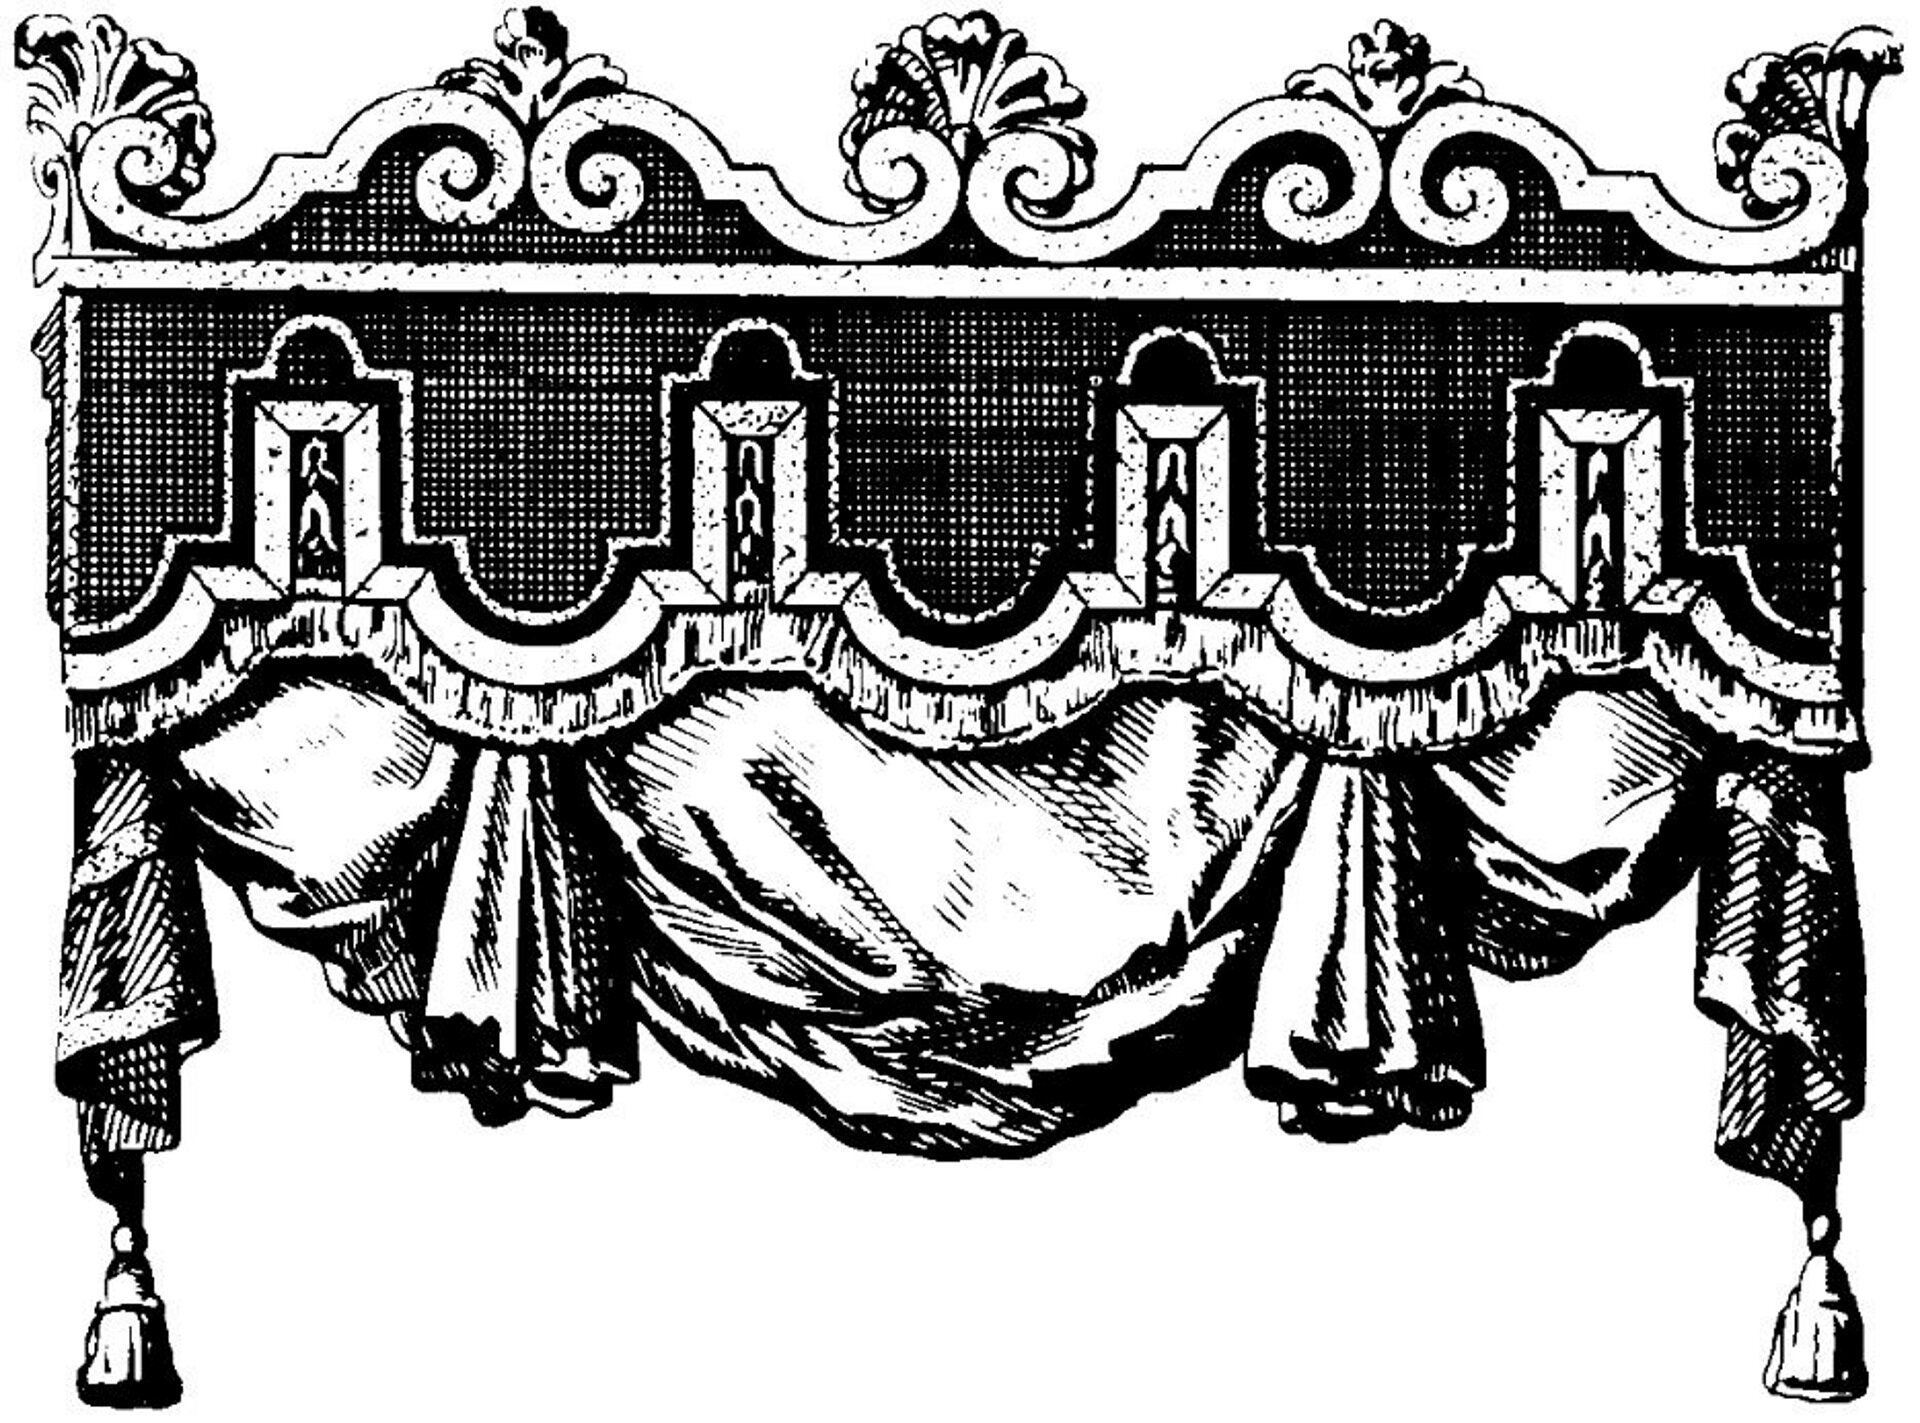 Ilustracja przedstawiająca ornament – lambrekin. Element dekoracyjny naszkicowany jest czarnym kolorem bez wypełenień. Ornament kształtem przypomina baldachim - dekoracyjny element, który można znaleźć czasami nad łóżkiem, z którego wystaje tkanina.